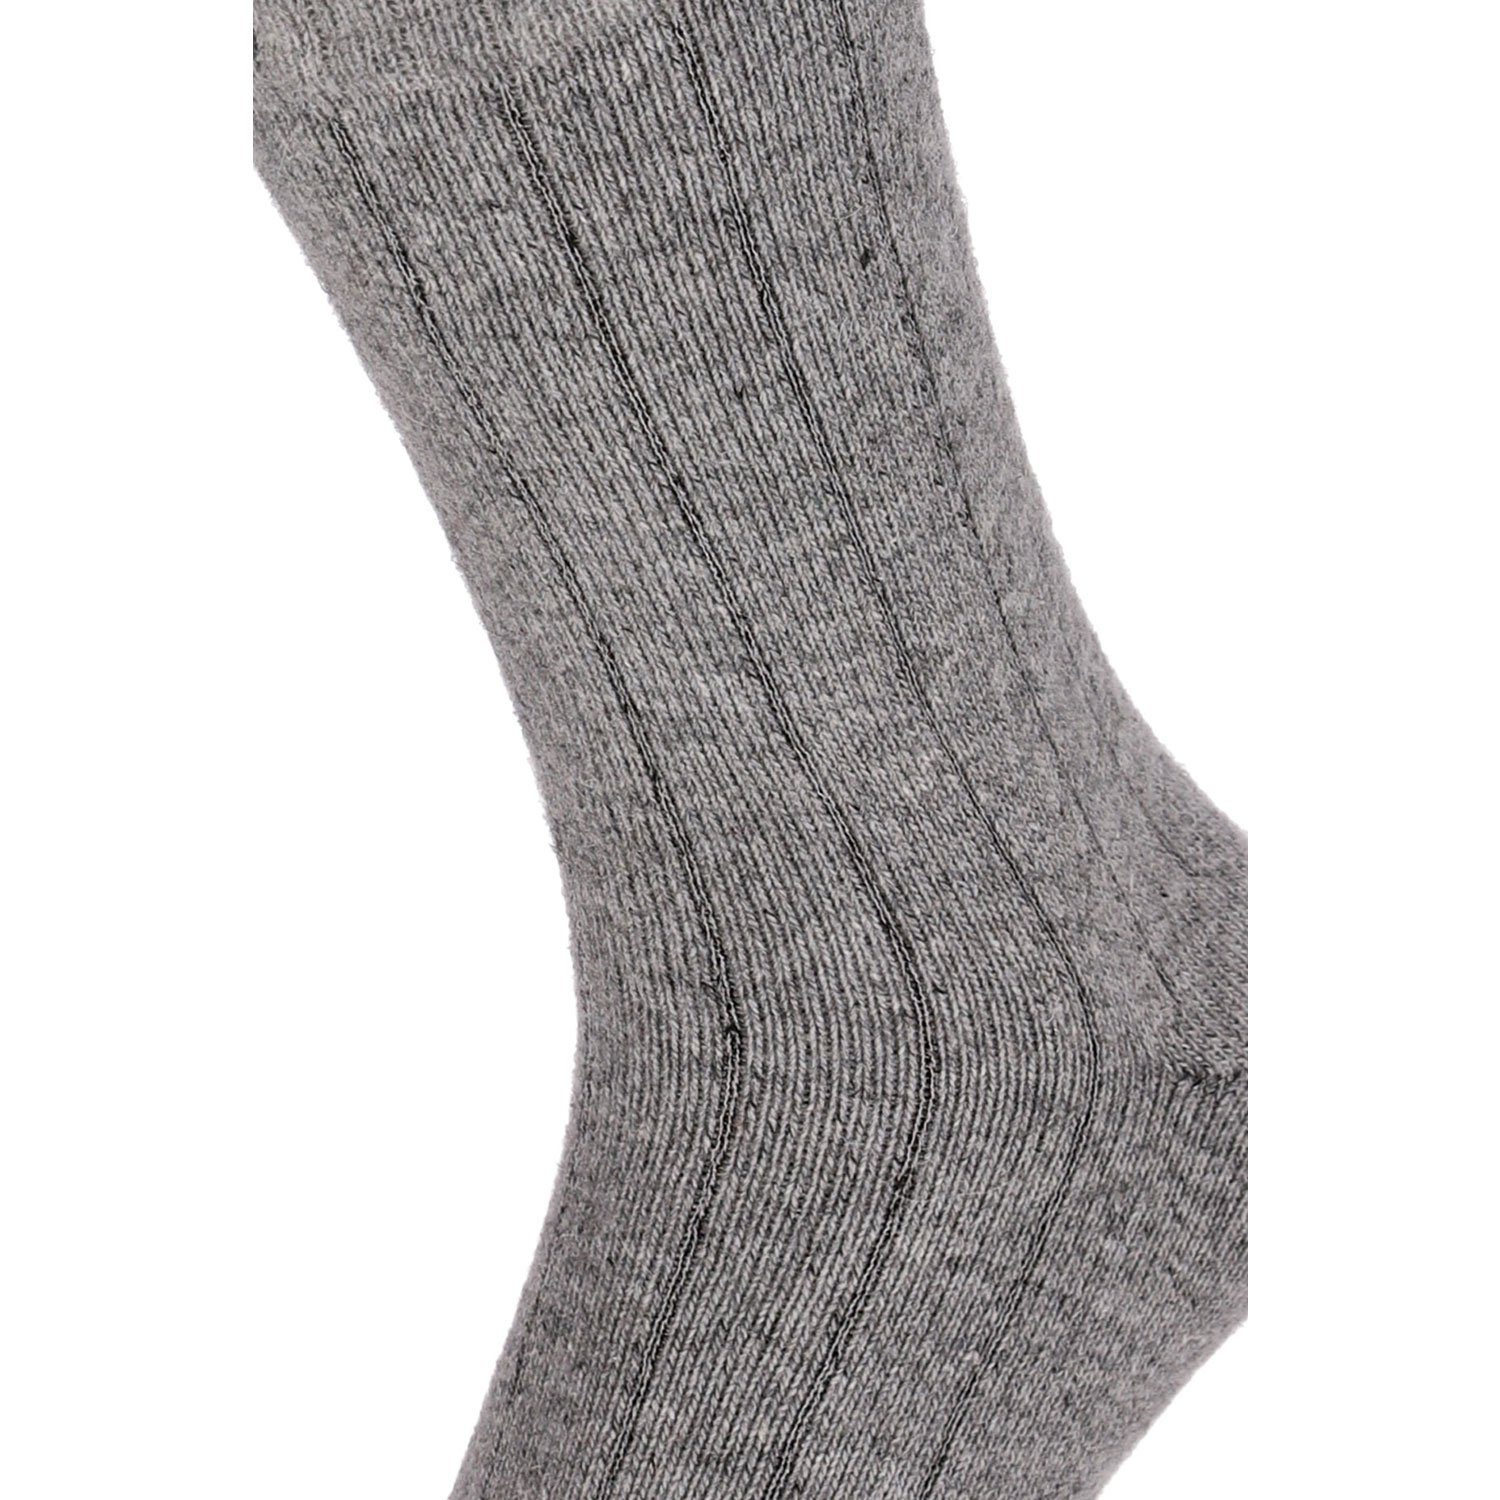 Soft Extra Super Warm Socken Winter Paar Strümpfe Damen 2 Herren Wolle Chili Merino Lifestyle